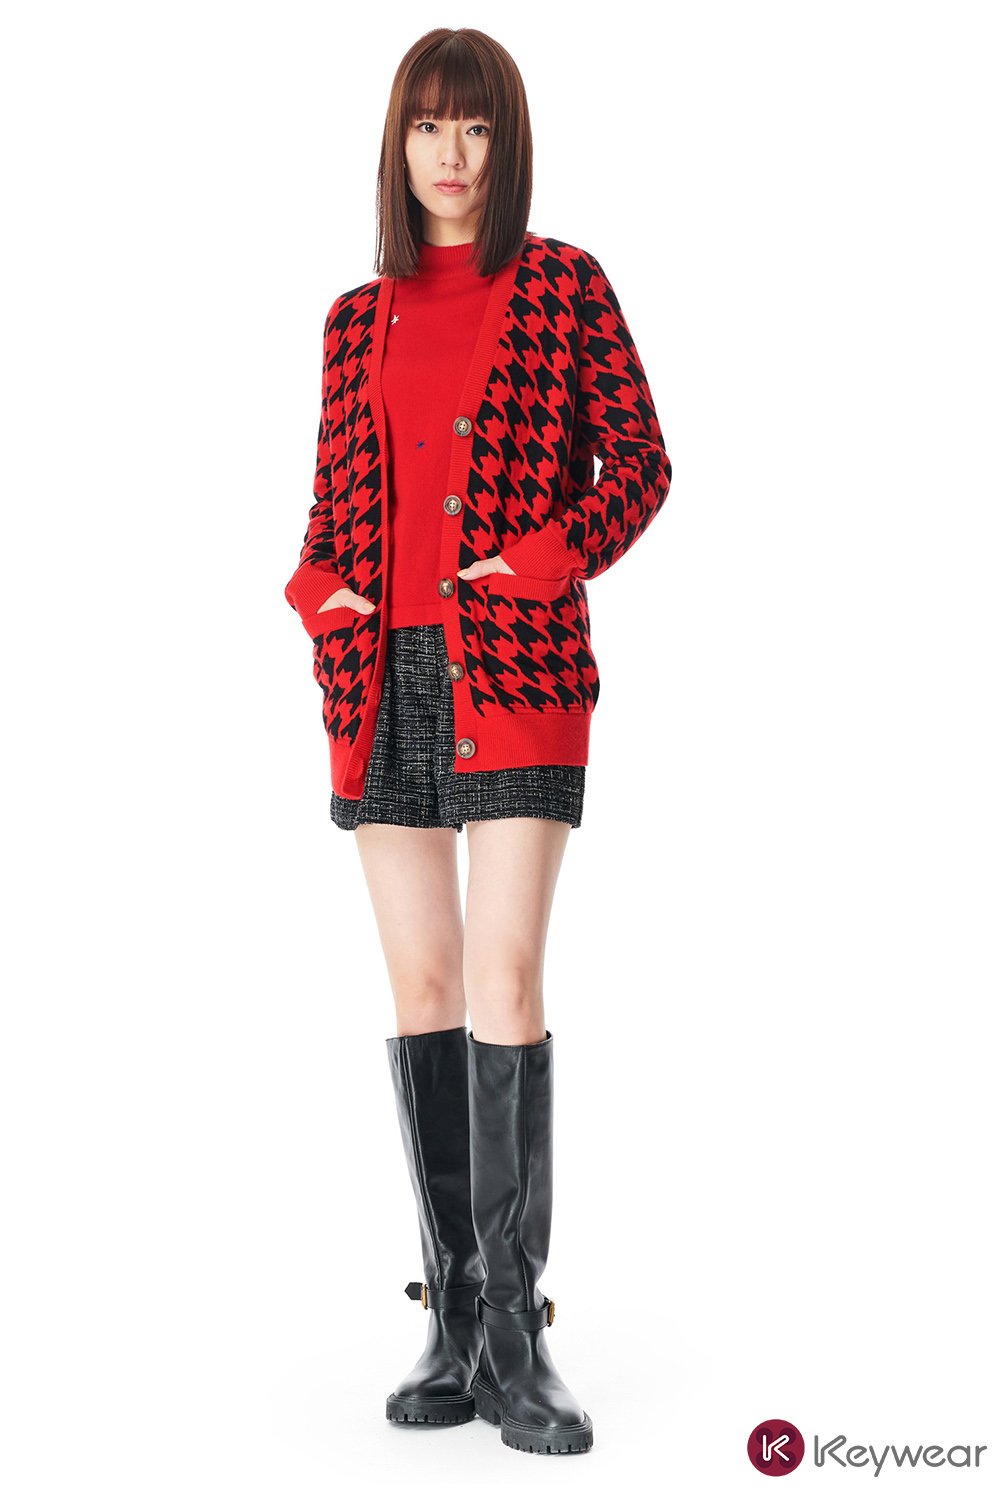 KeyWear 奇威名品 時尚千鳥格羊毛外套(紅色)優惠推薦